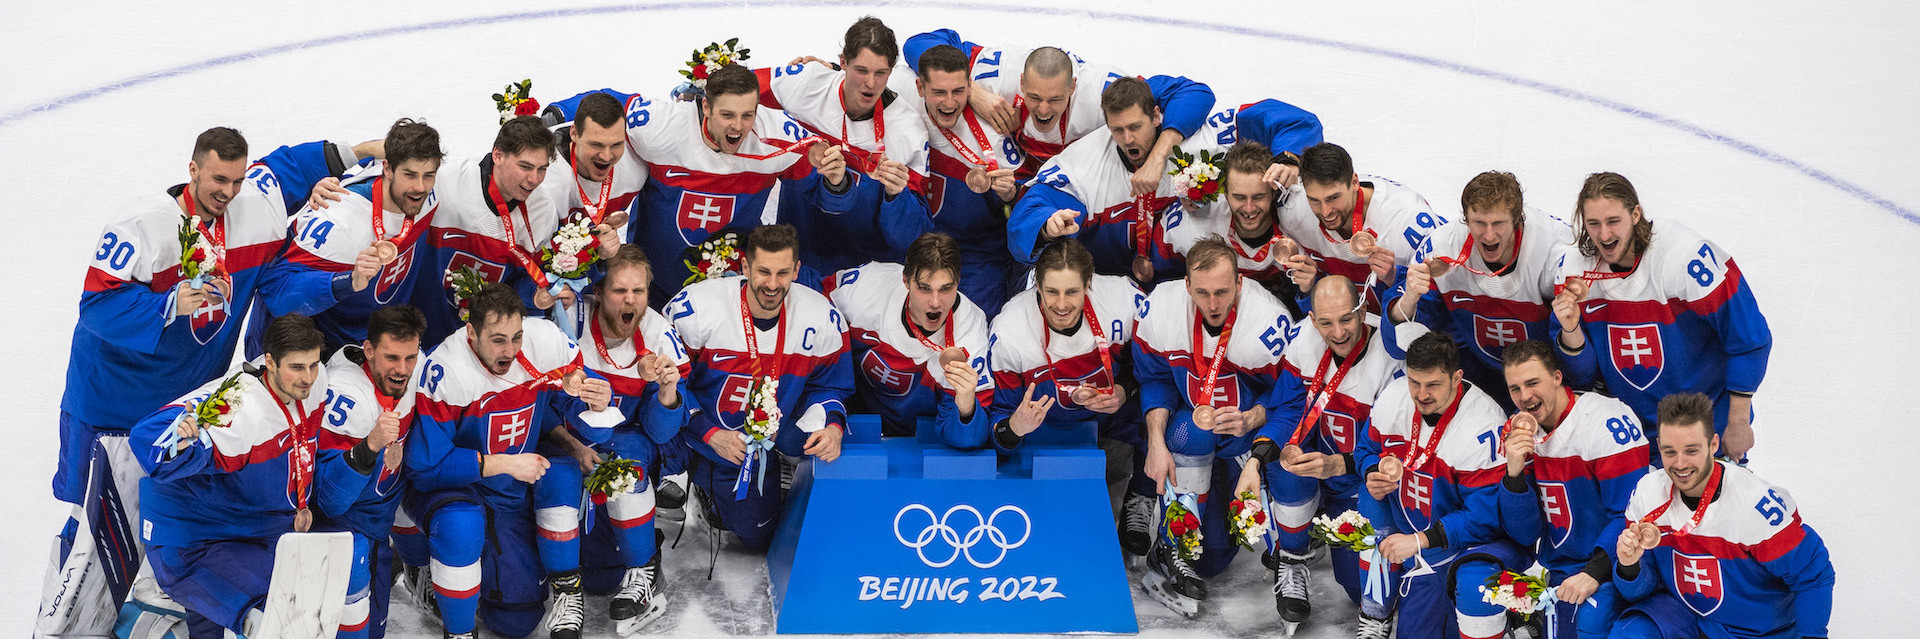 Slovensko získalo historický olympijský hokejový bronz